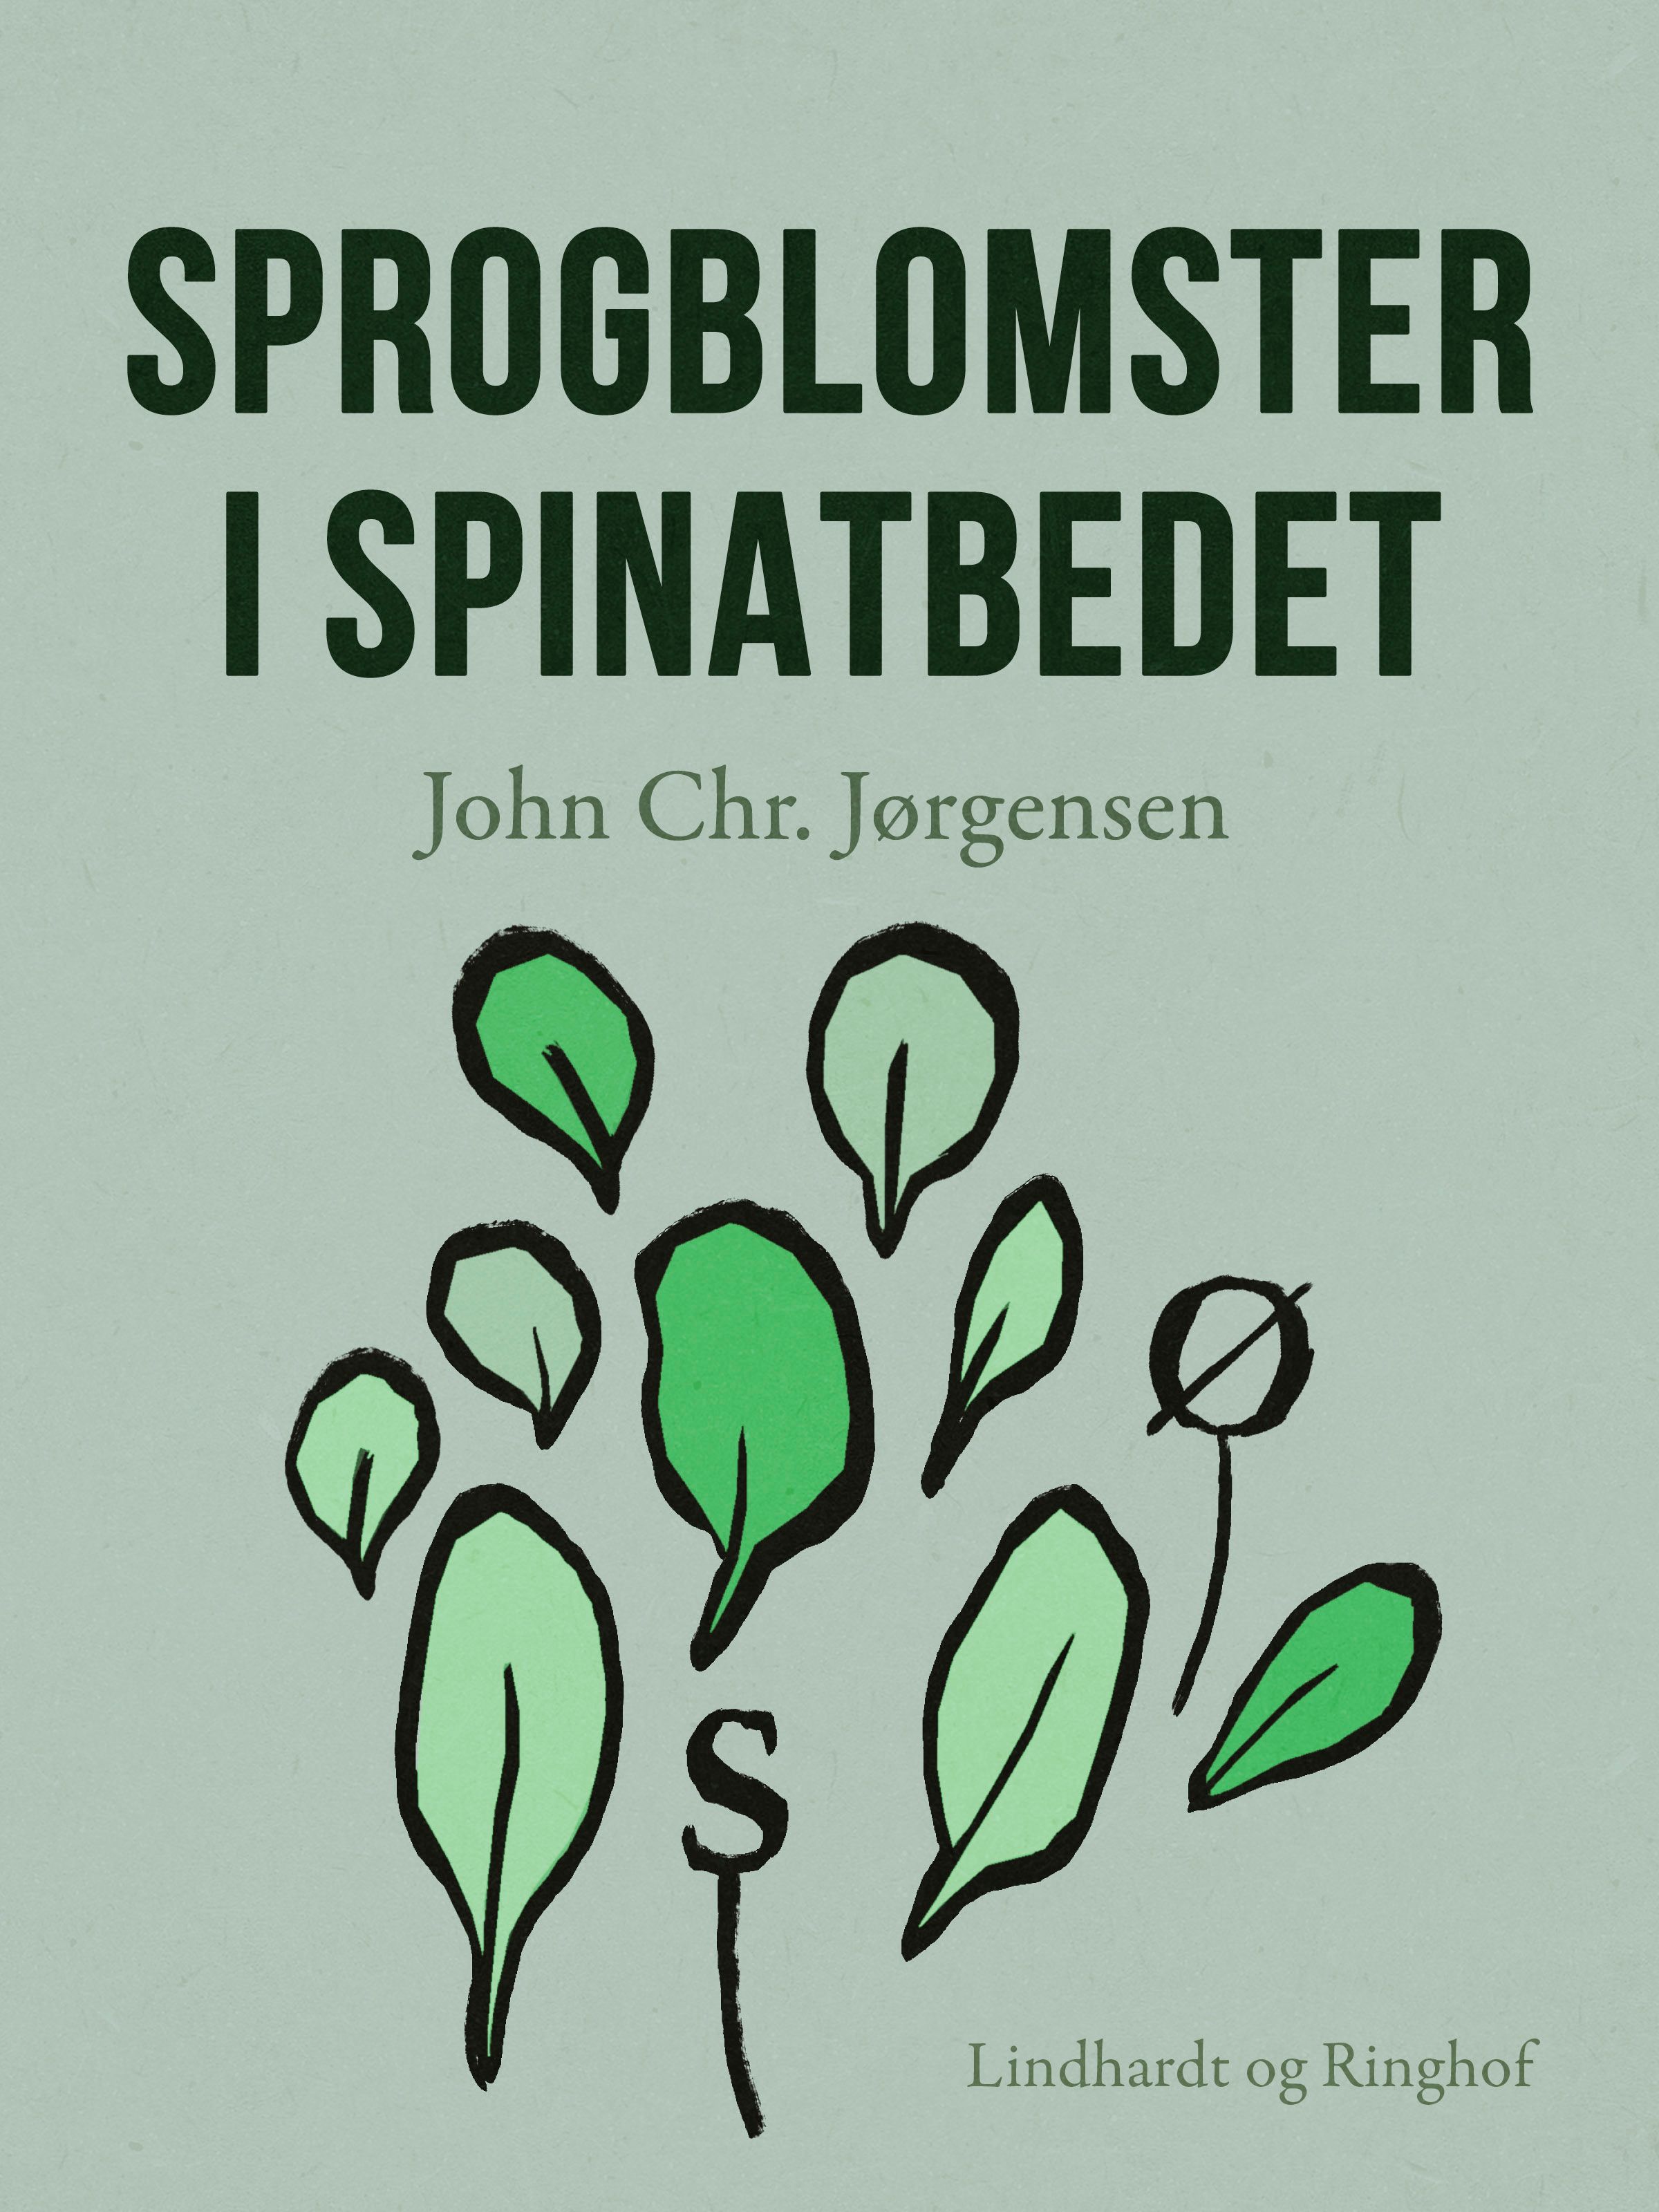 Sprogblomster i spinatbedet, e-bok av John Chr. Jørgensen